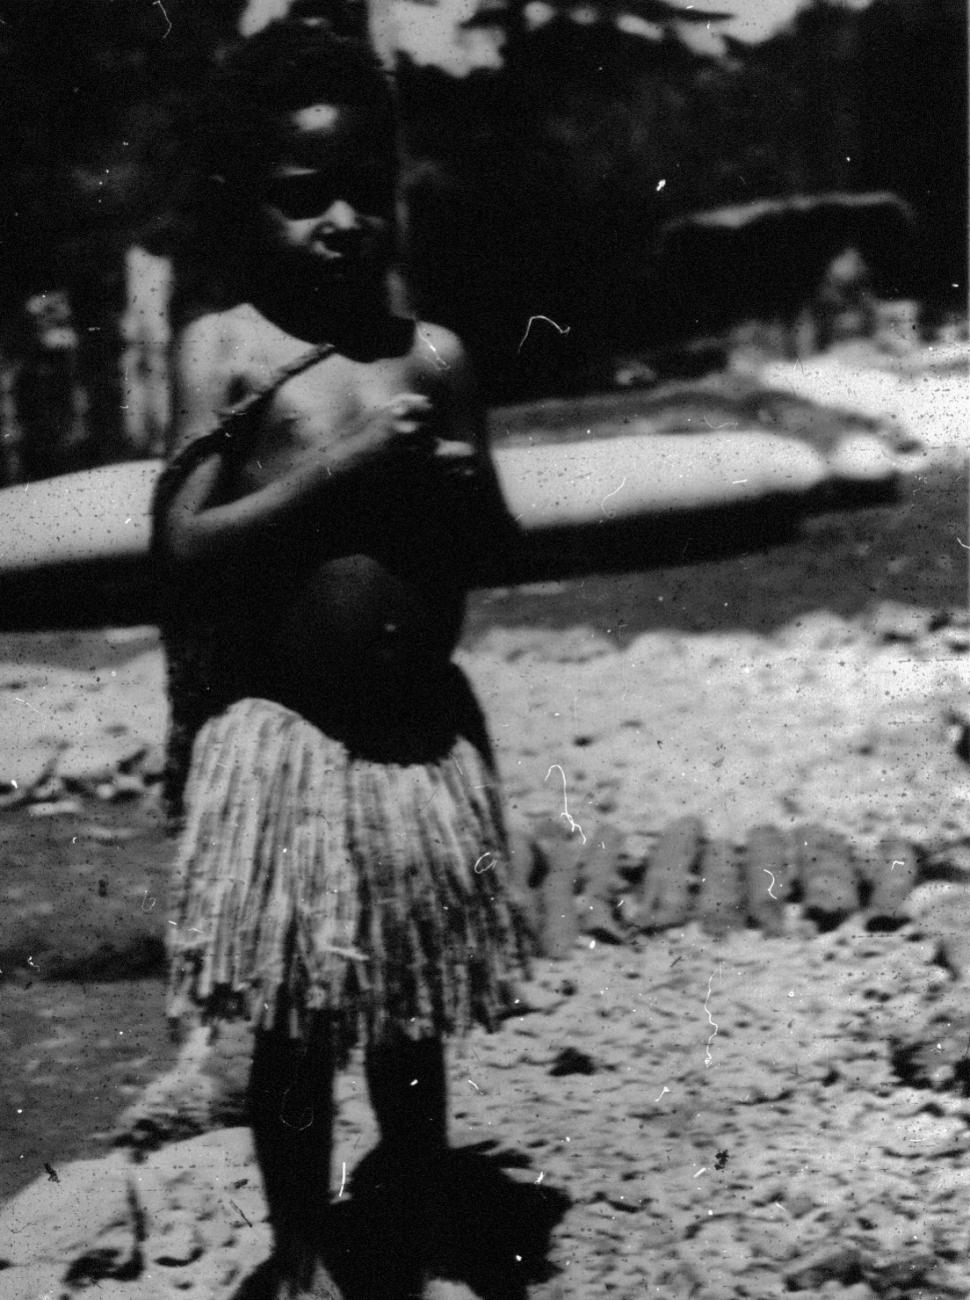 BD/66/146 - 
Jong meisje met een rieten rok
